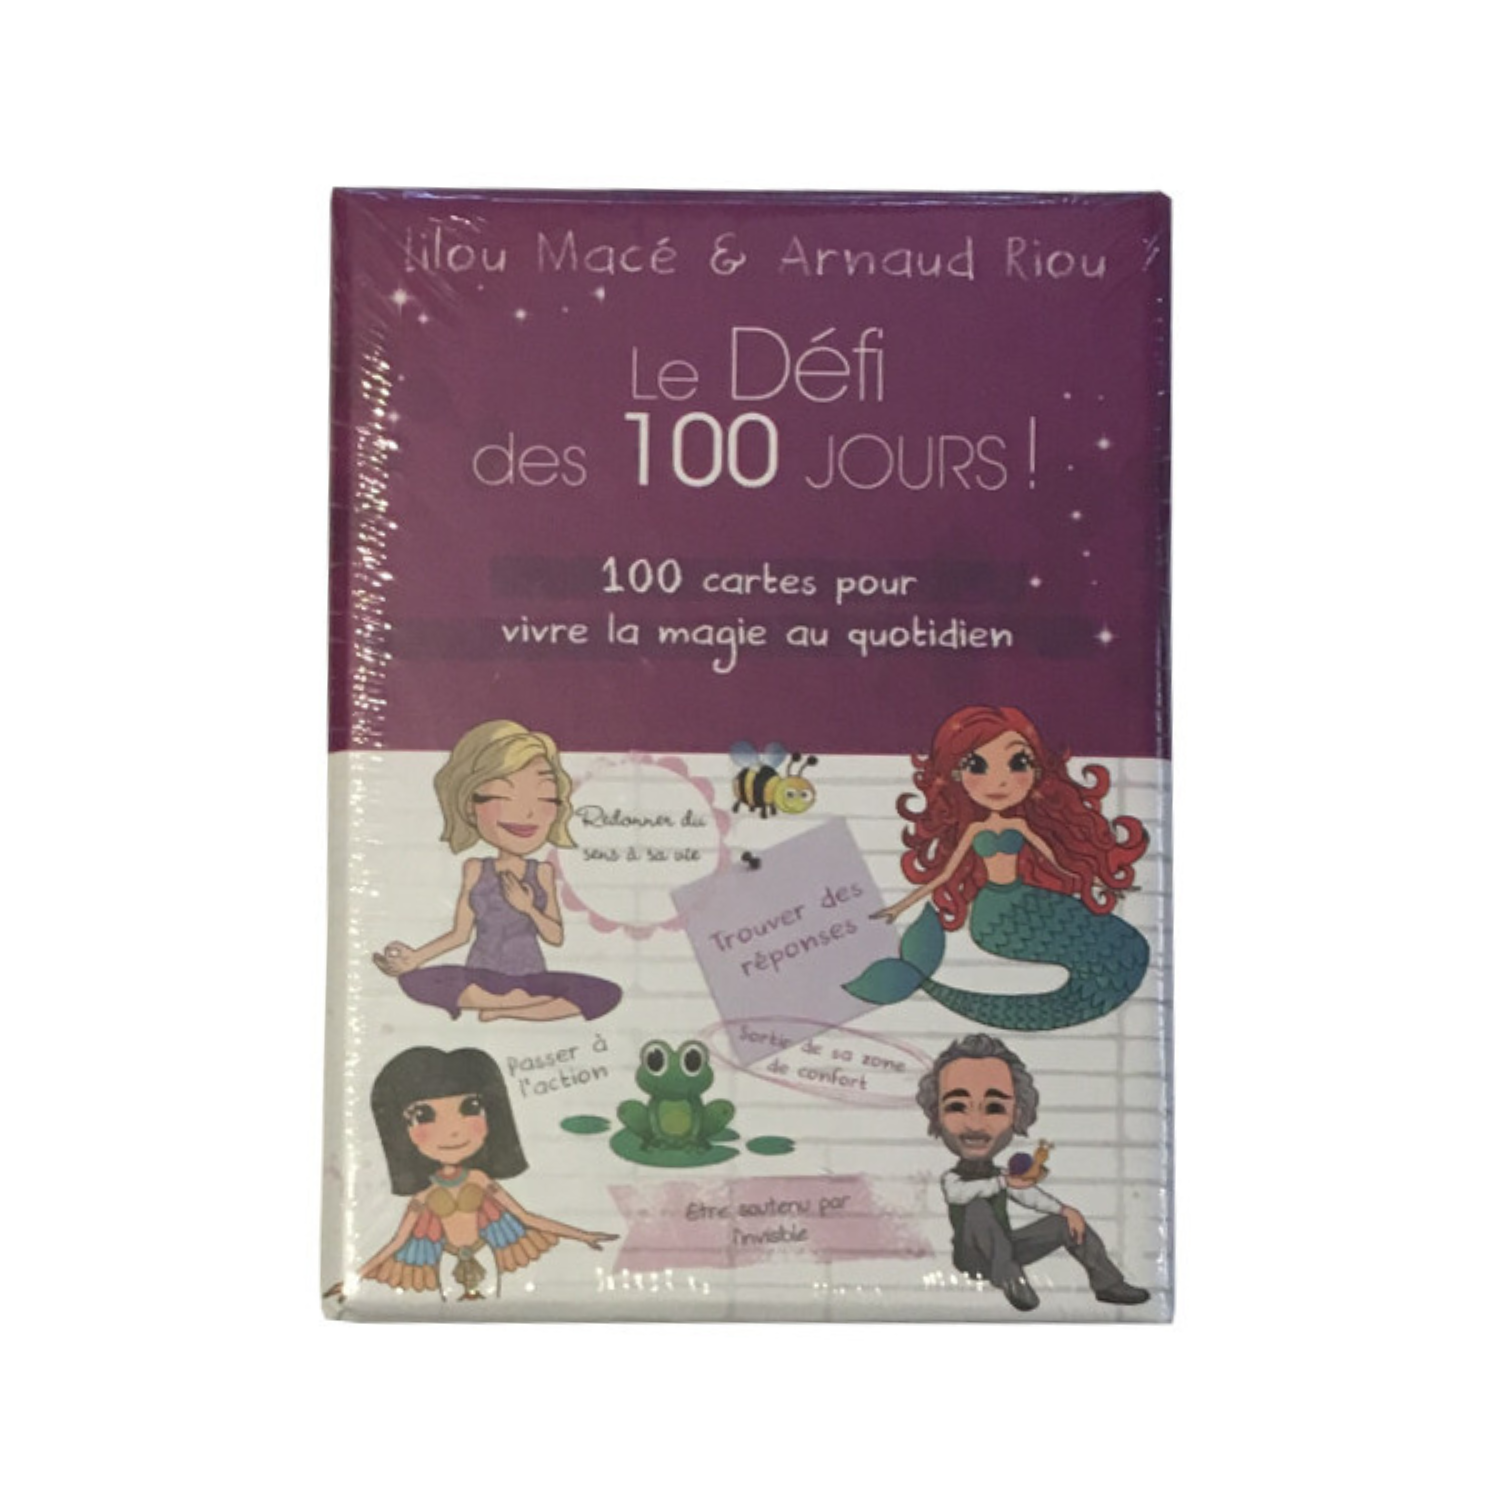 Le Défi des 100 jours ! 100 cartes pour vivre la magie au quotidien